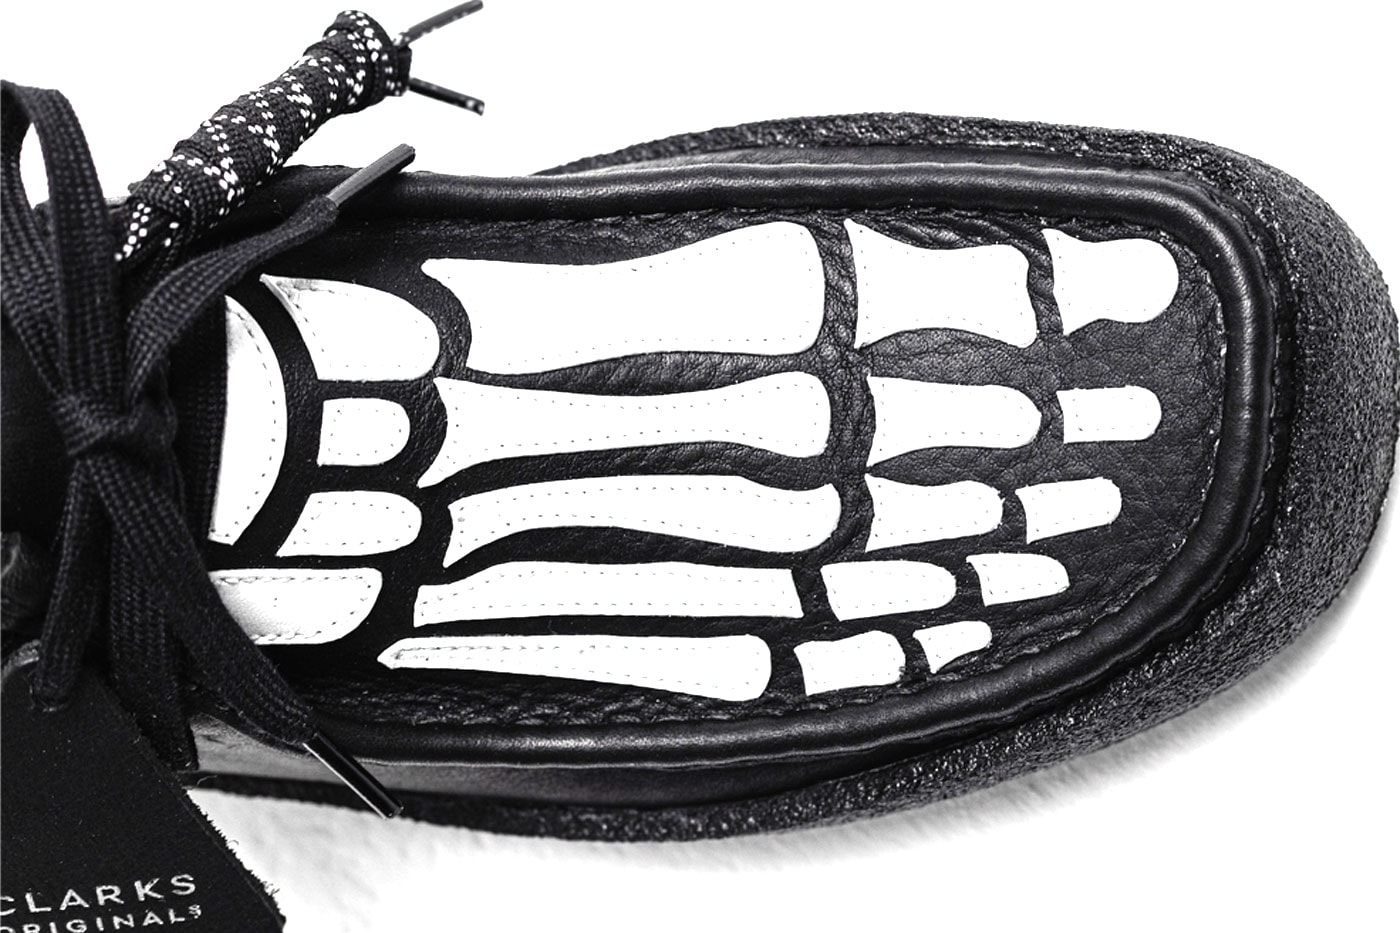 ヴァンディーザピンクxクラークスオリジナルスがハロウィンシーズンに最適なコラボフットウェアを発売 VANDYTHEPINK Clarks Skeleton Wallabee Cup Boot Release Date info price black white leather tag virginia bones tumbled leather 